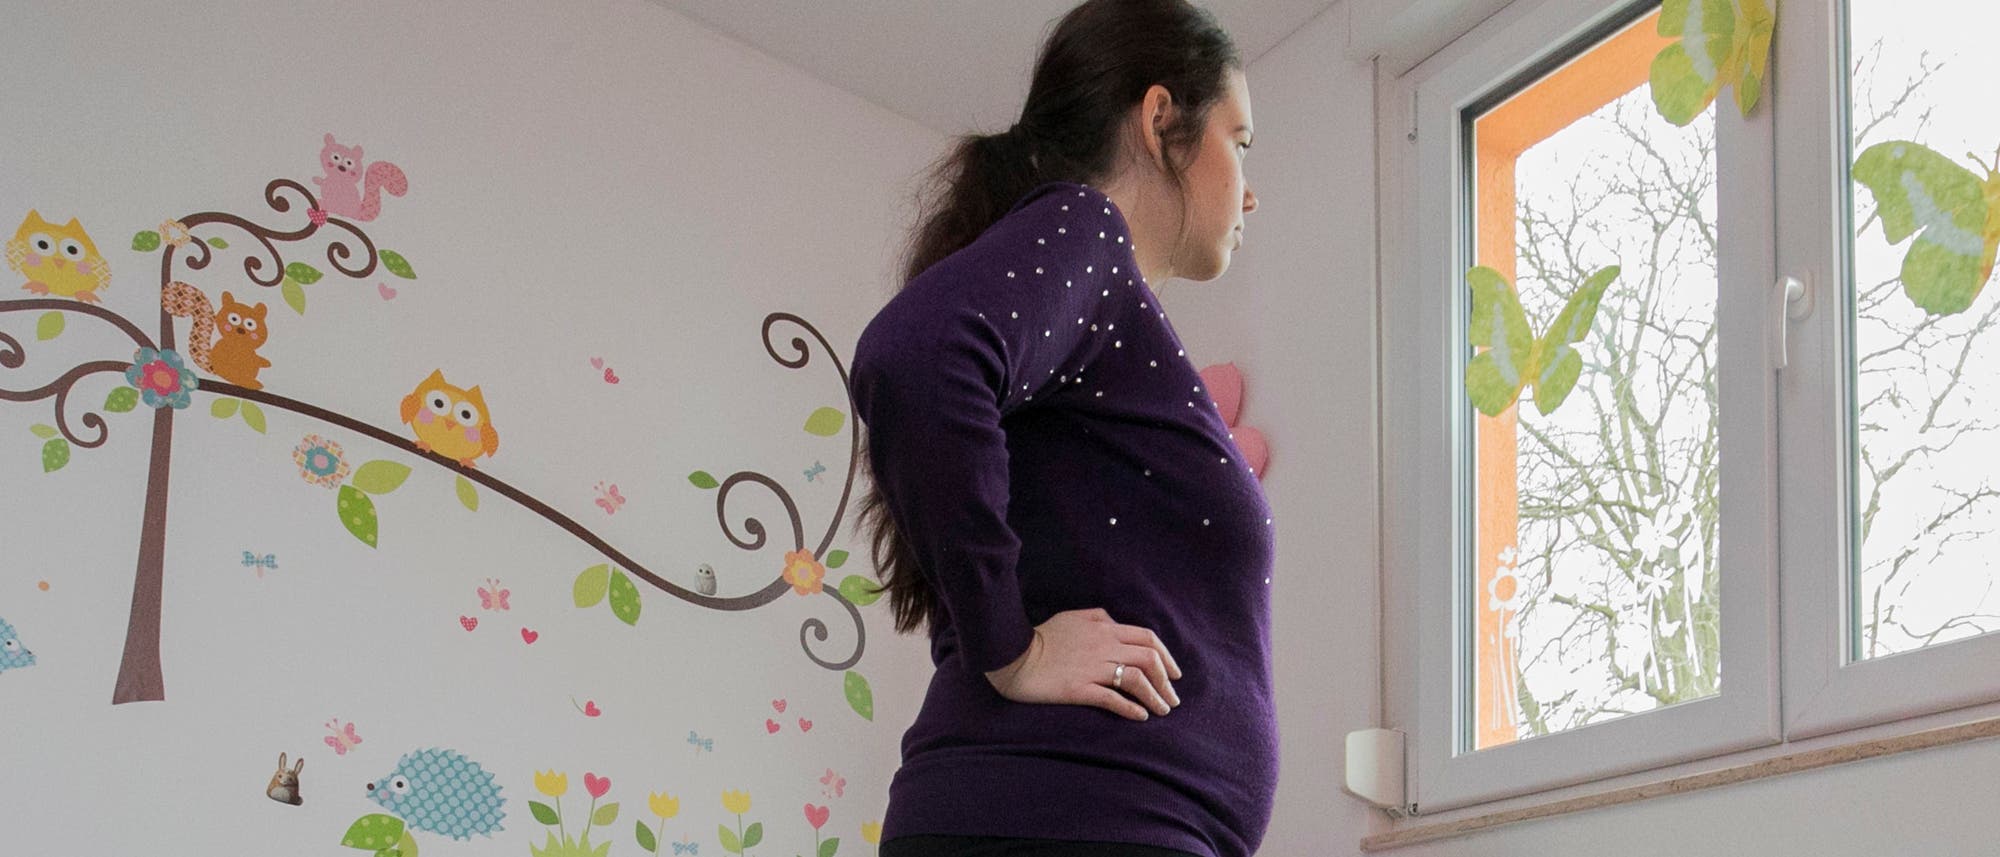 Eine schwangere Frau blickt aus einem Fenster. Sie befindet sich offenbar in einem Kinderzimmer.